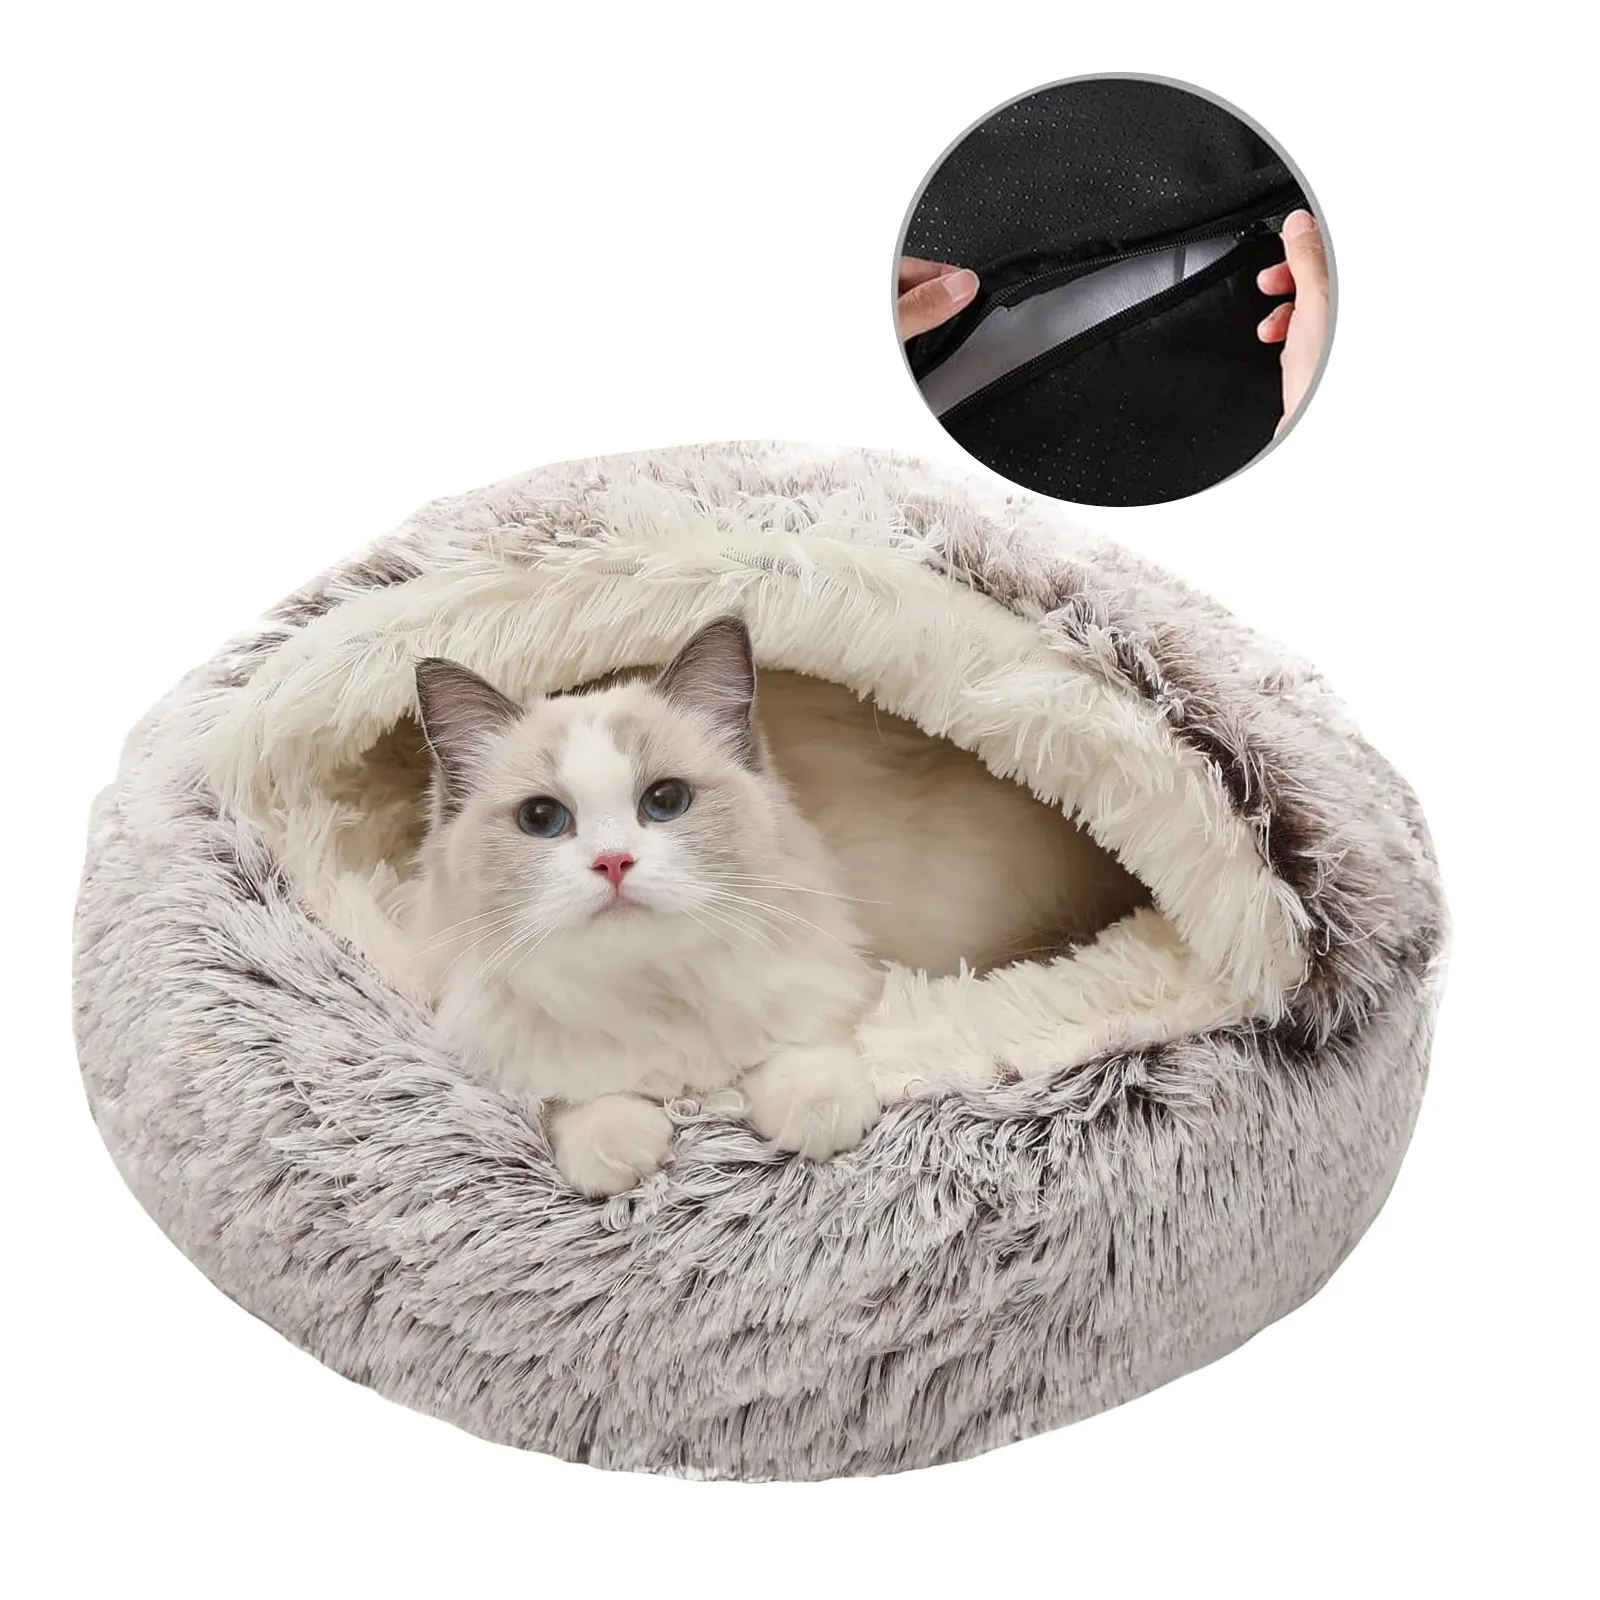 इनडोर पेट हाउस हटाने योग्य धोने योग्य आरामदायक पालतू डोनट आलीशान कुशन हुड वाले कवर के साथ गोल कुत्ता बिल्ली गुफा बिस्तर